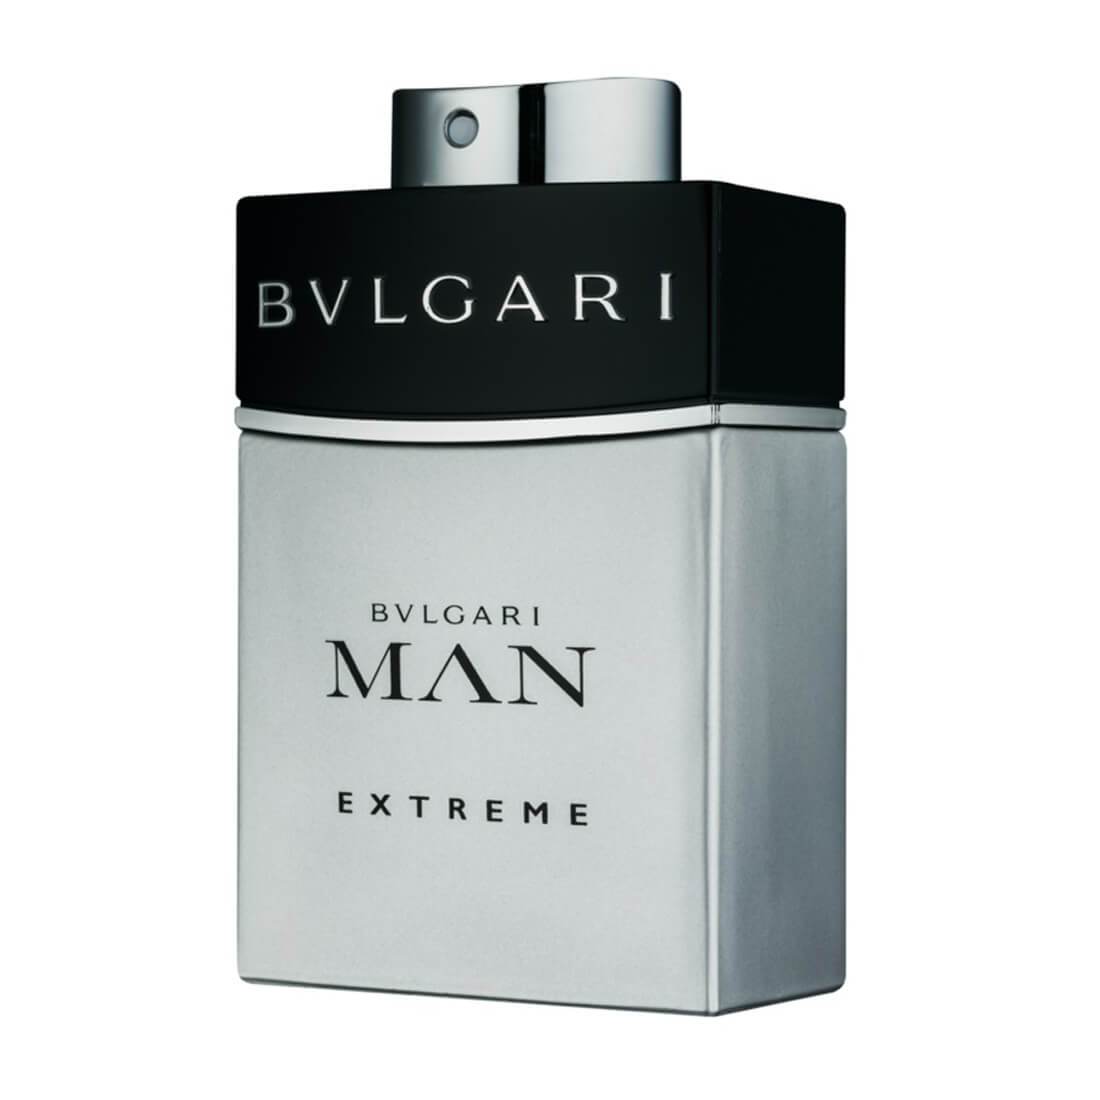 Bvlgari Man Extreme EDT Perfume For Men - 60ml